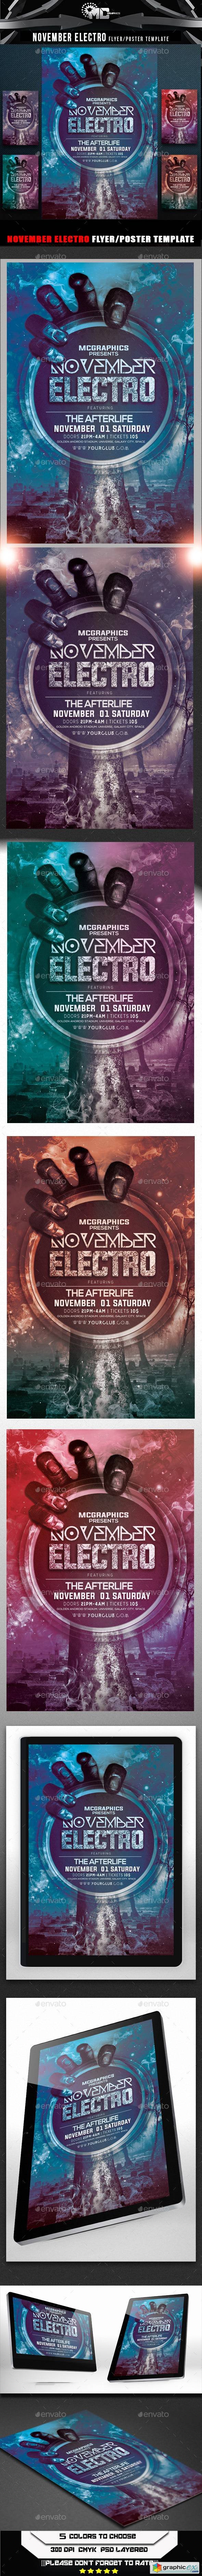 November Electro Flyer Template